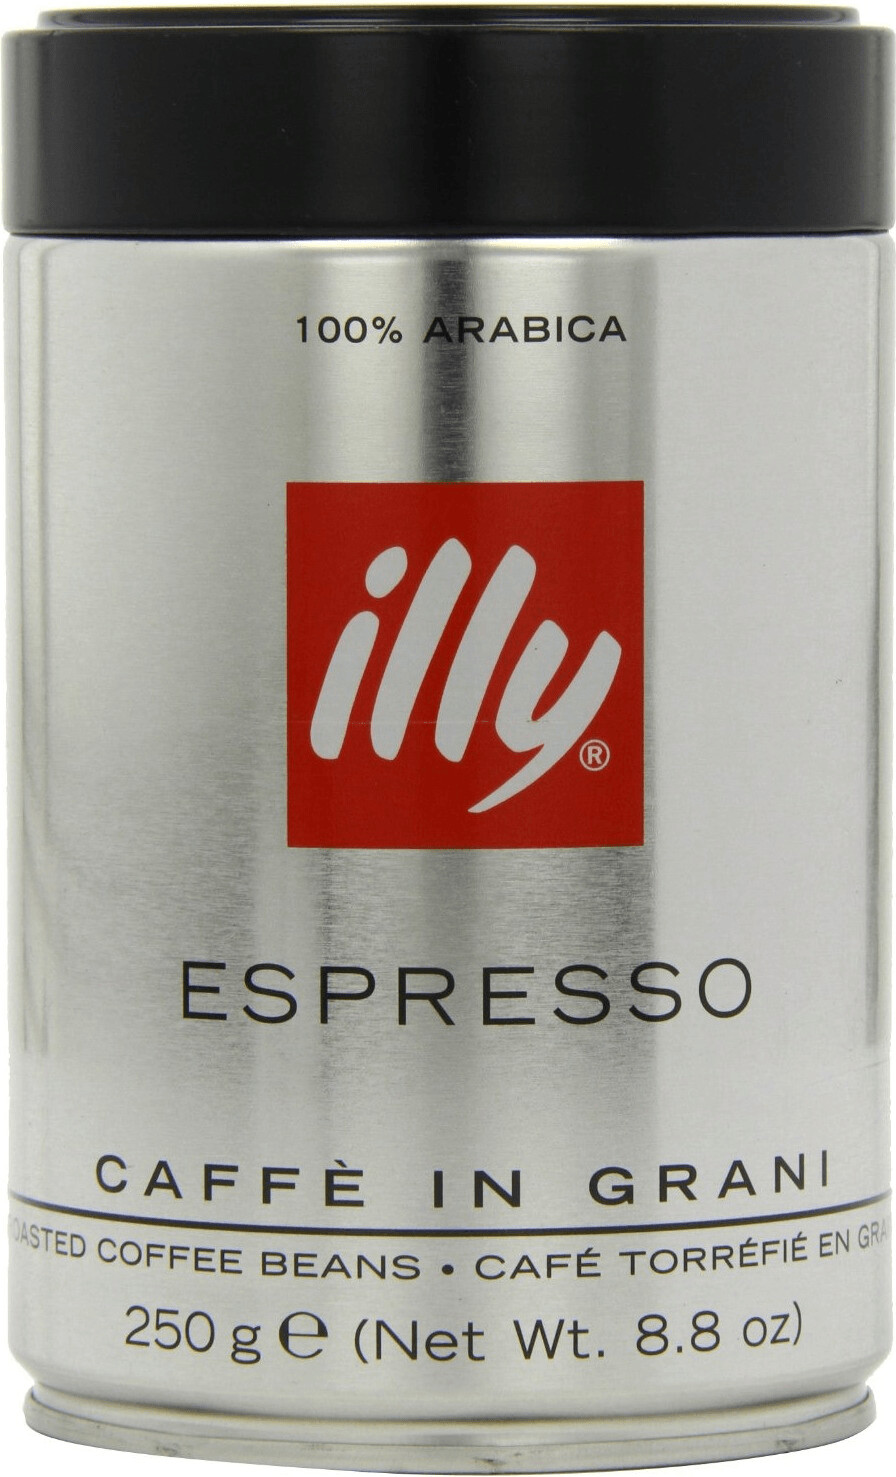 illy Intenso Caffè in Grani a € 6,90 (oggi)